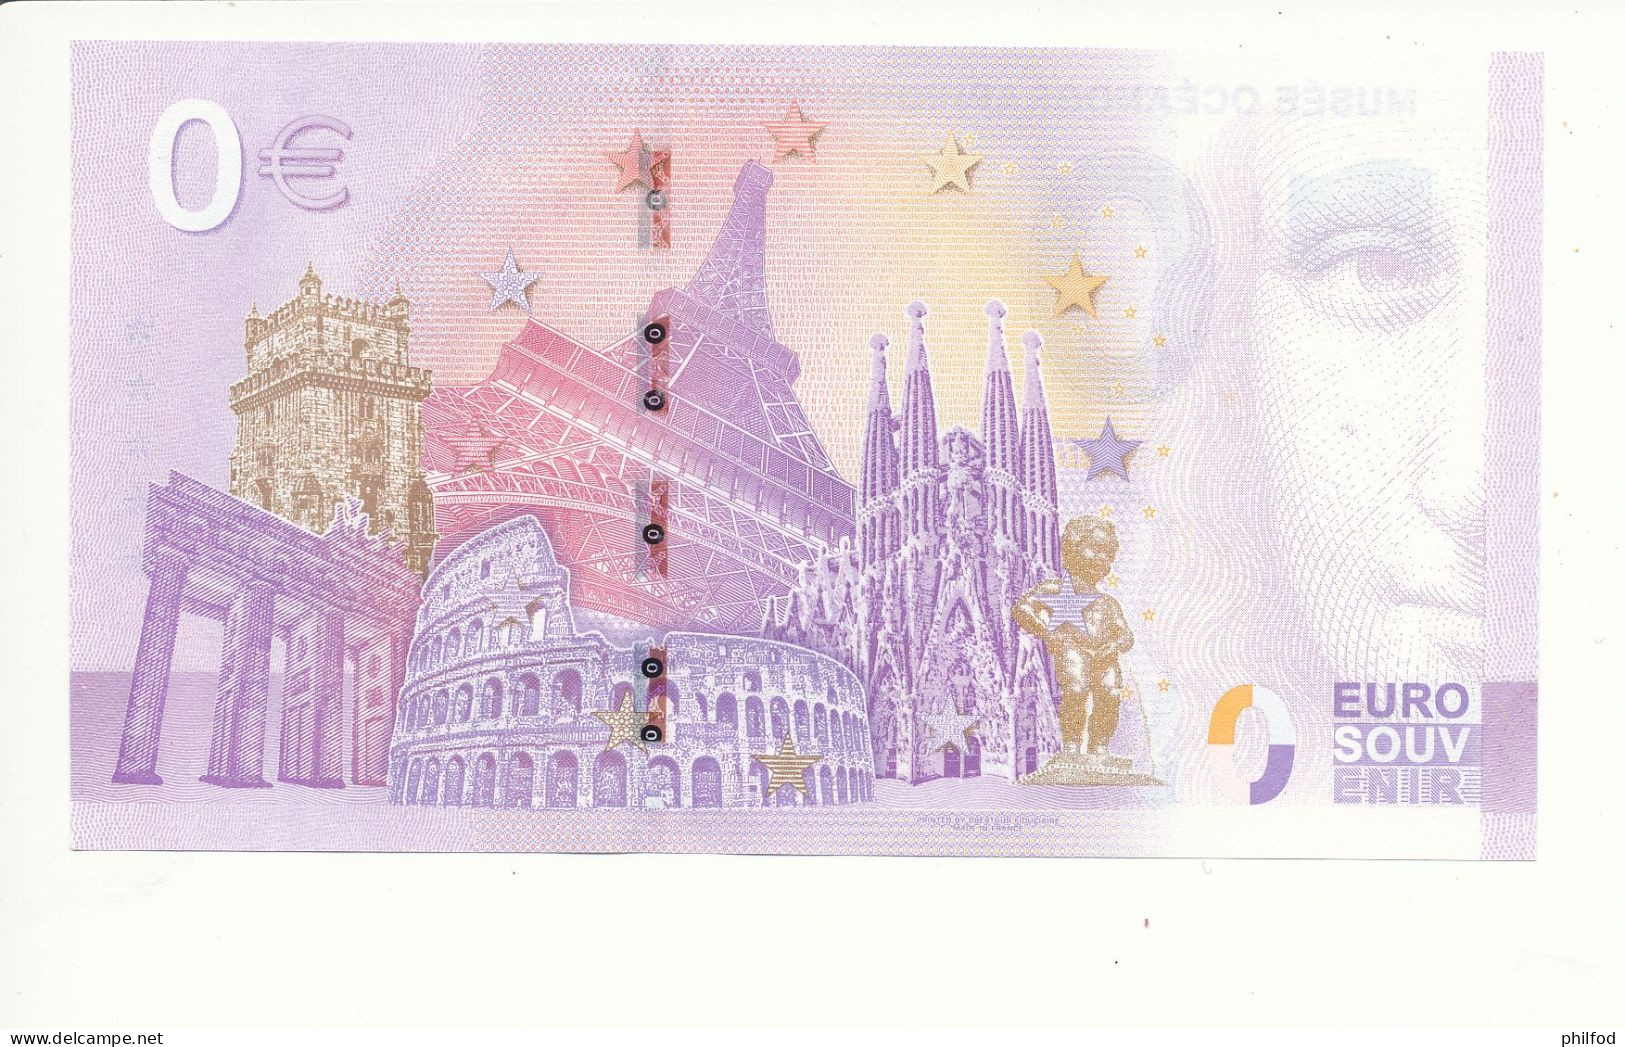 Billet Touristique 0 Euro - MUSÉE OCÉANOGRAPHIQUE DE MONACO - UEAW - 2022-1 - N° 44689 - Sonstige & Ohne Zuordnung